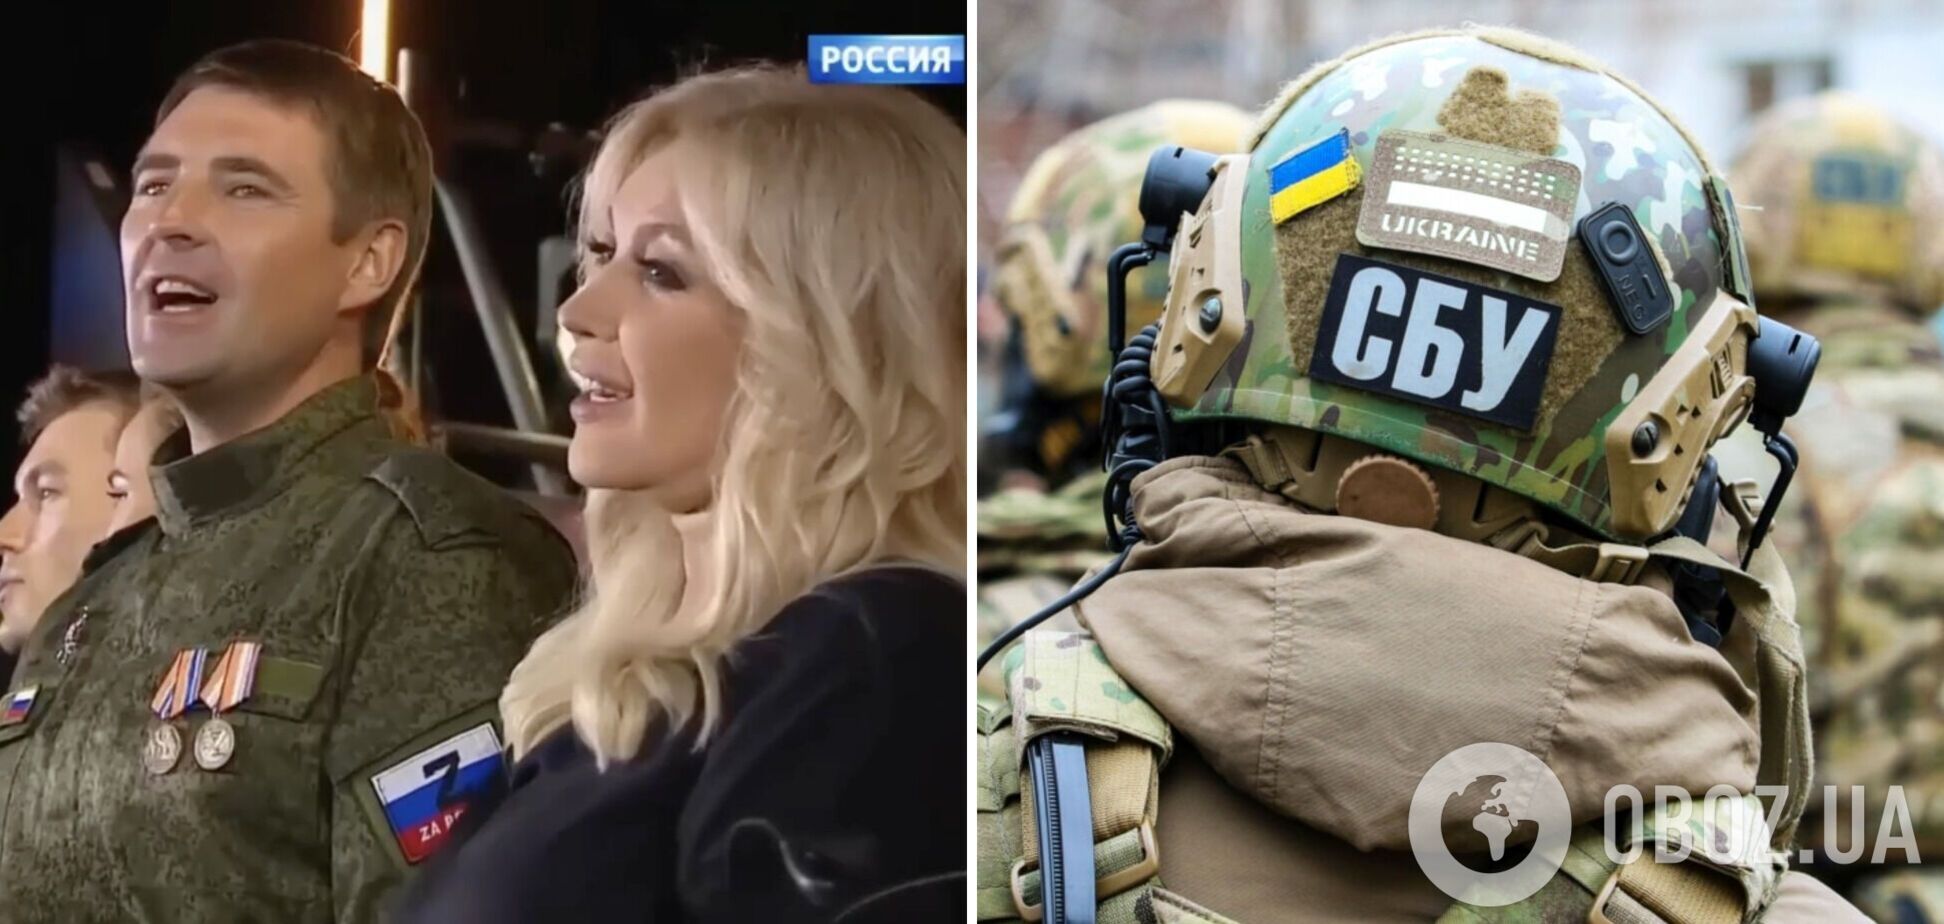 СБУ объявила подозрение Таисии Повалий, которая героизировала российских оккупантов и призывала их захватить всю Украину